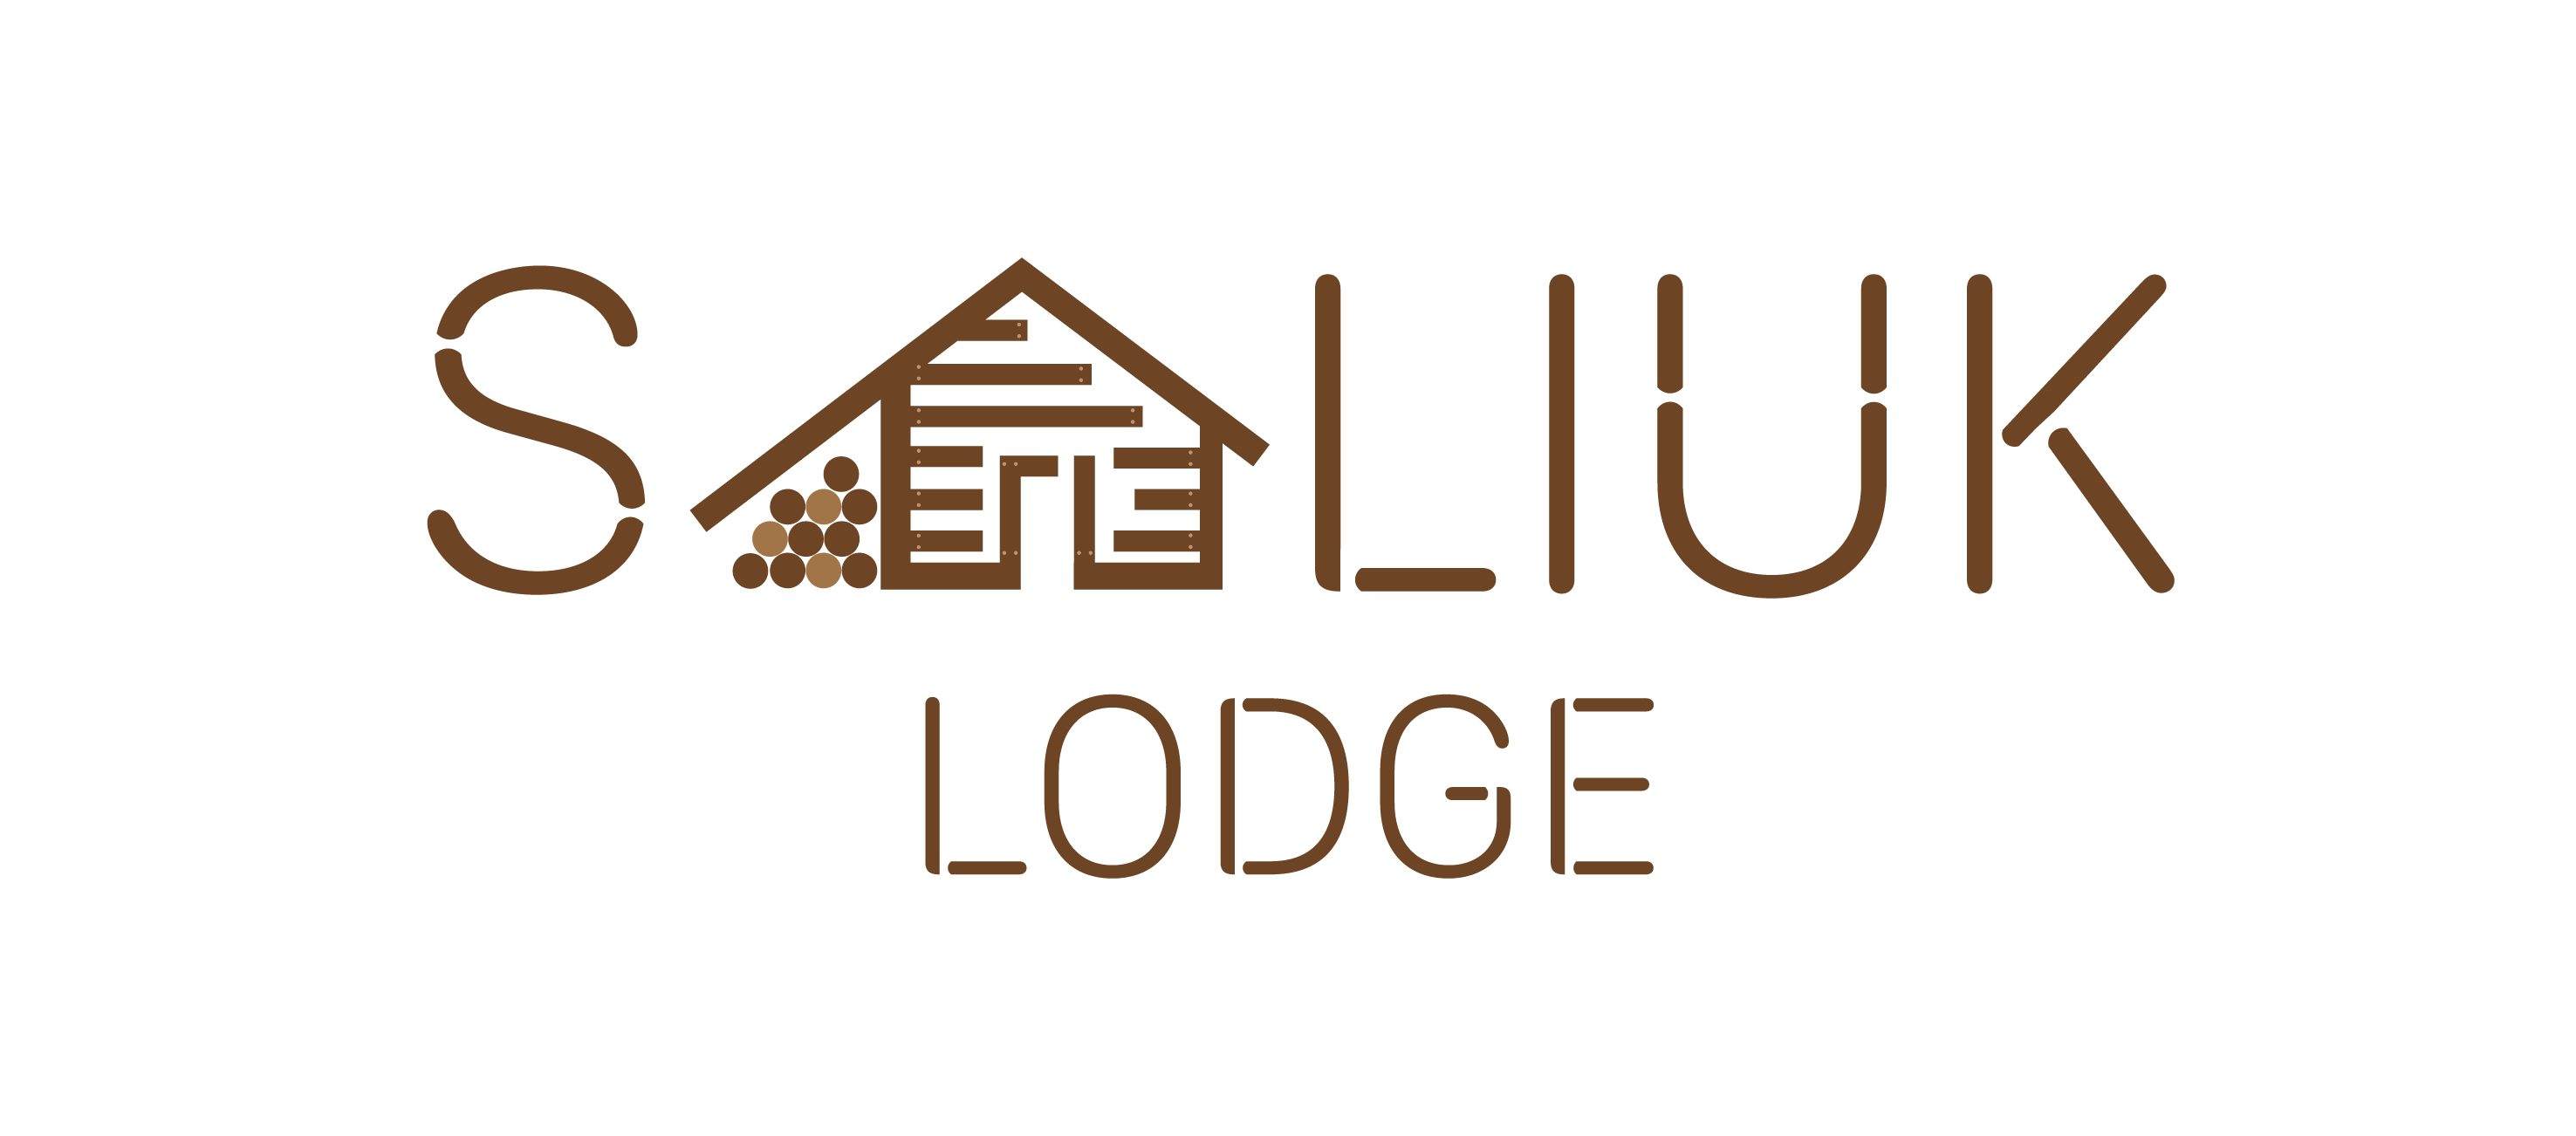 Saliuk Lodge